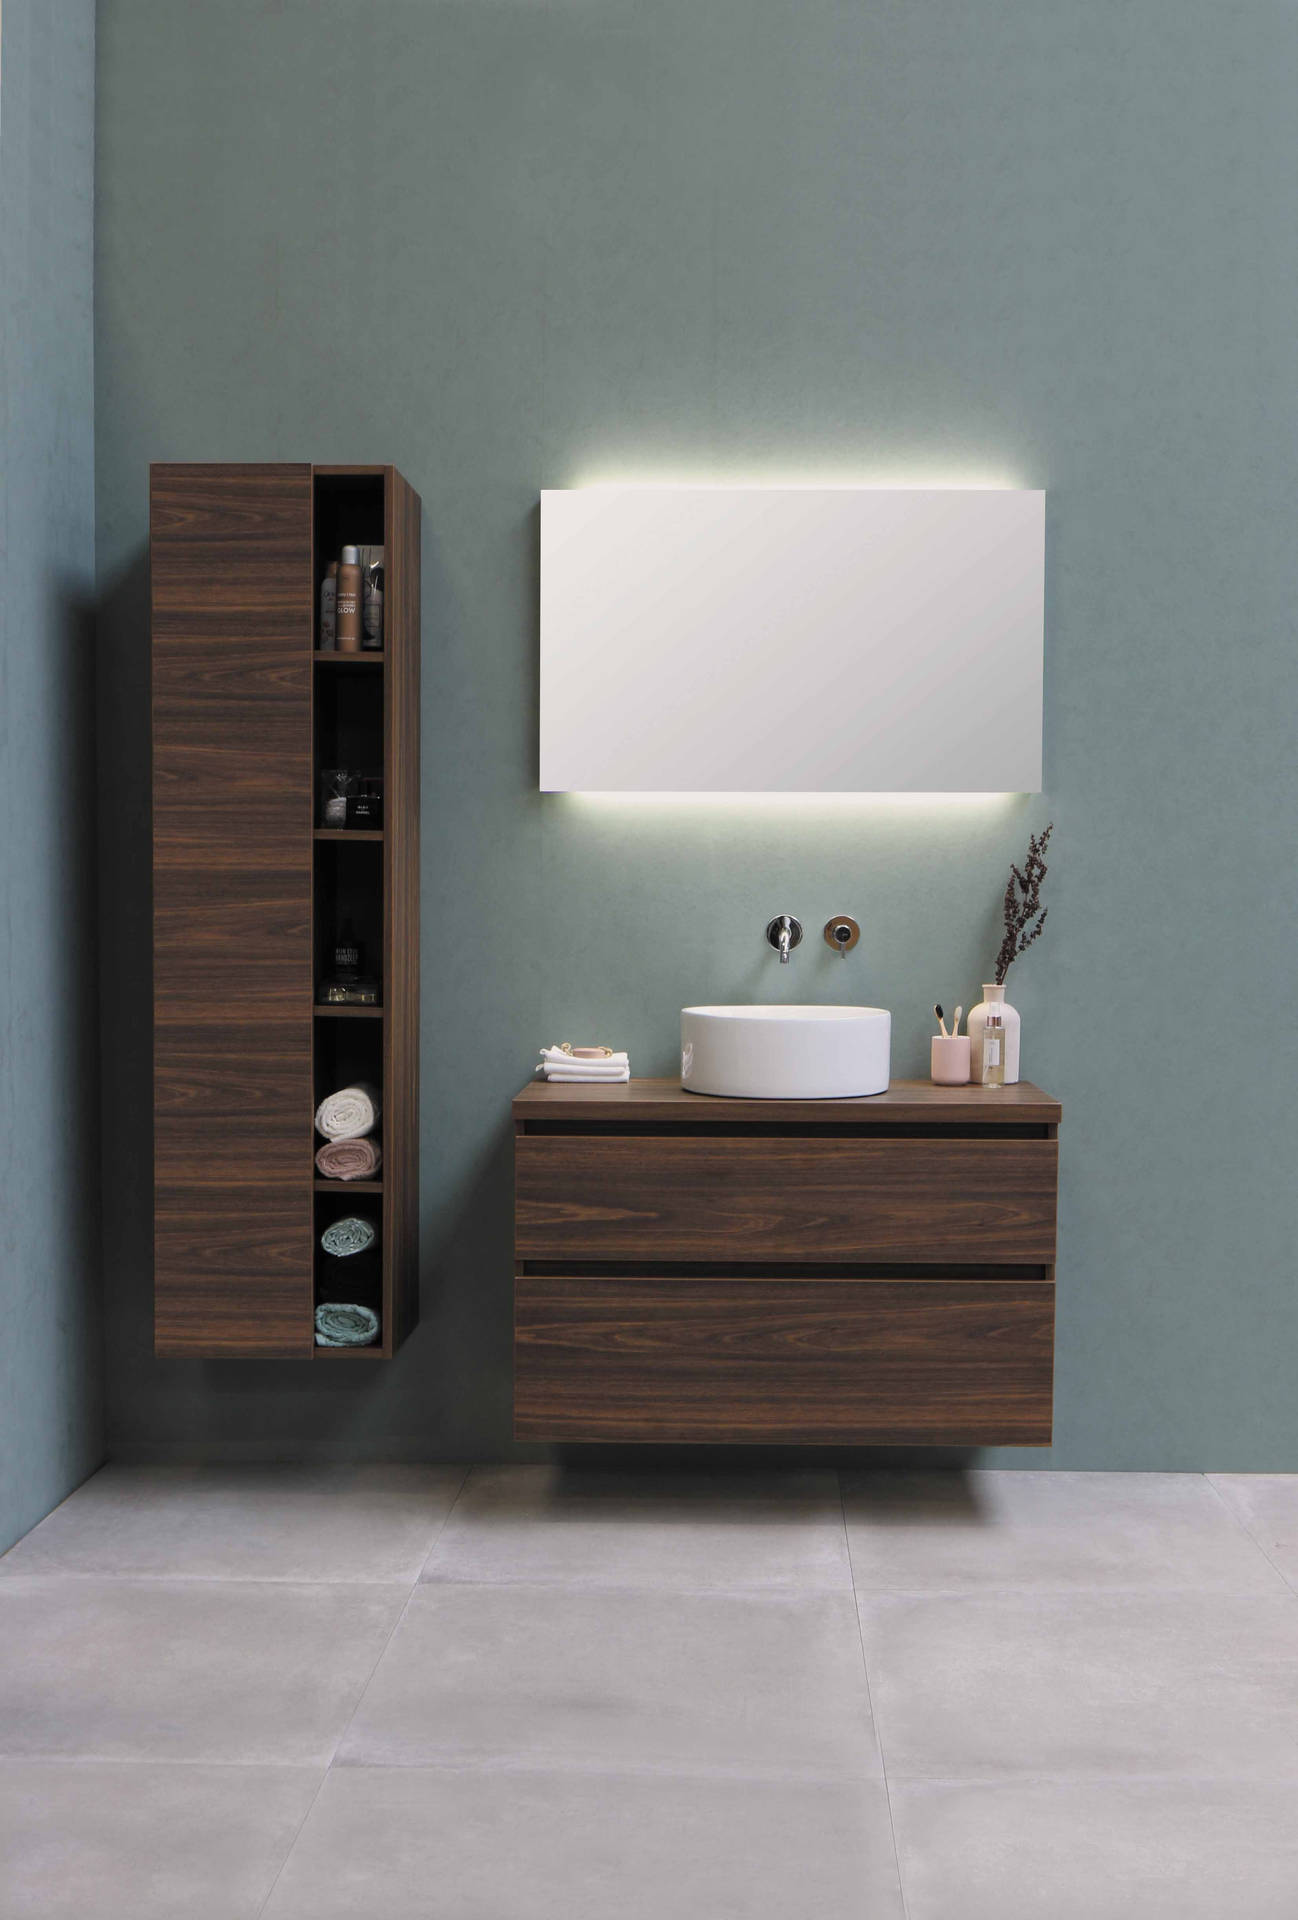 Aesthetic Simple Bathroom Interior Design